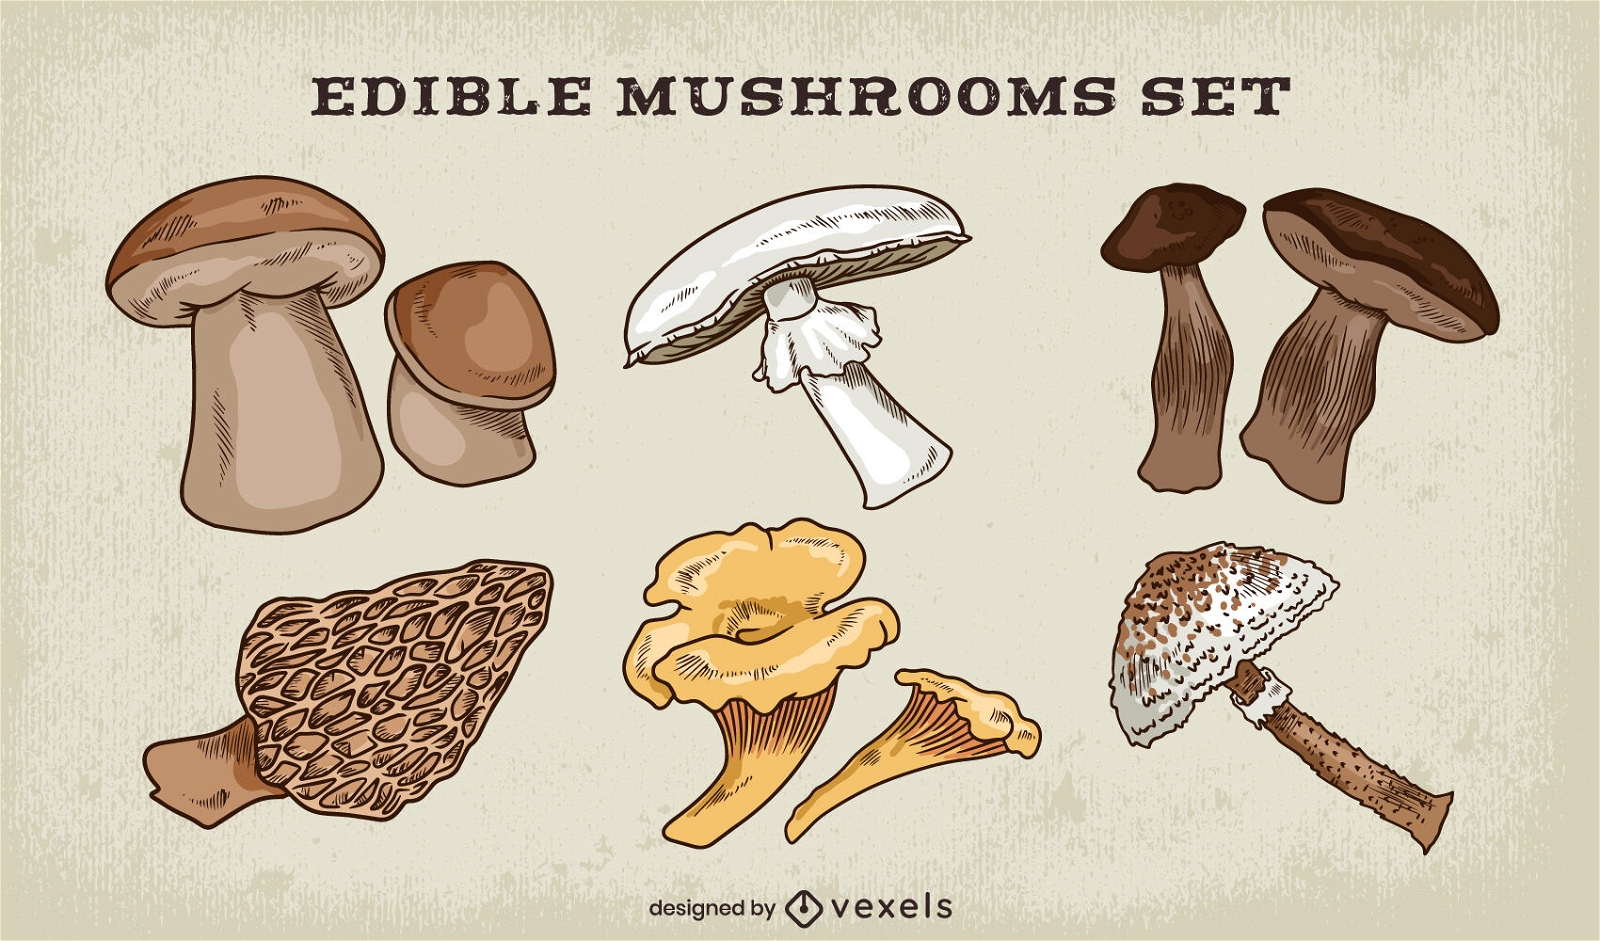 Edible mushrooms fungi set